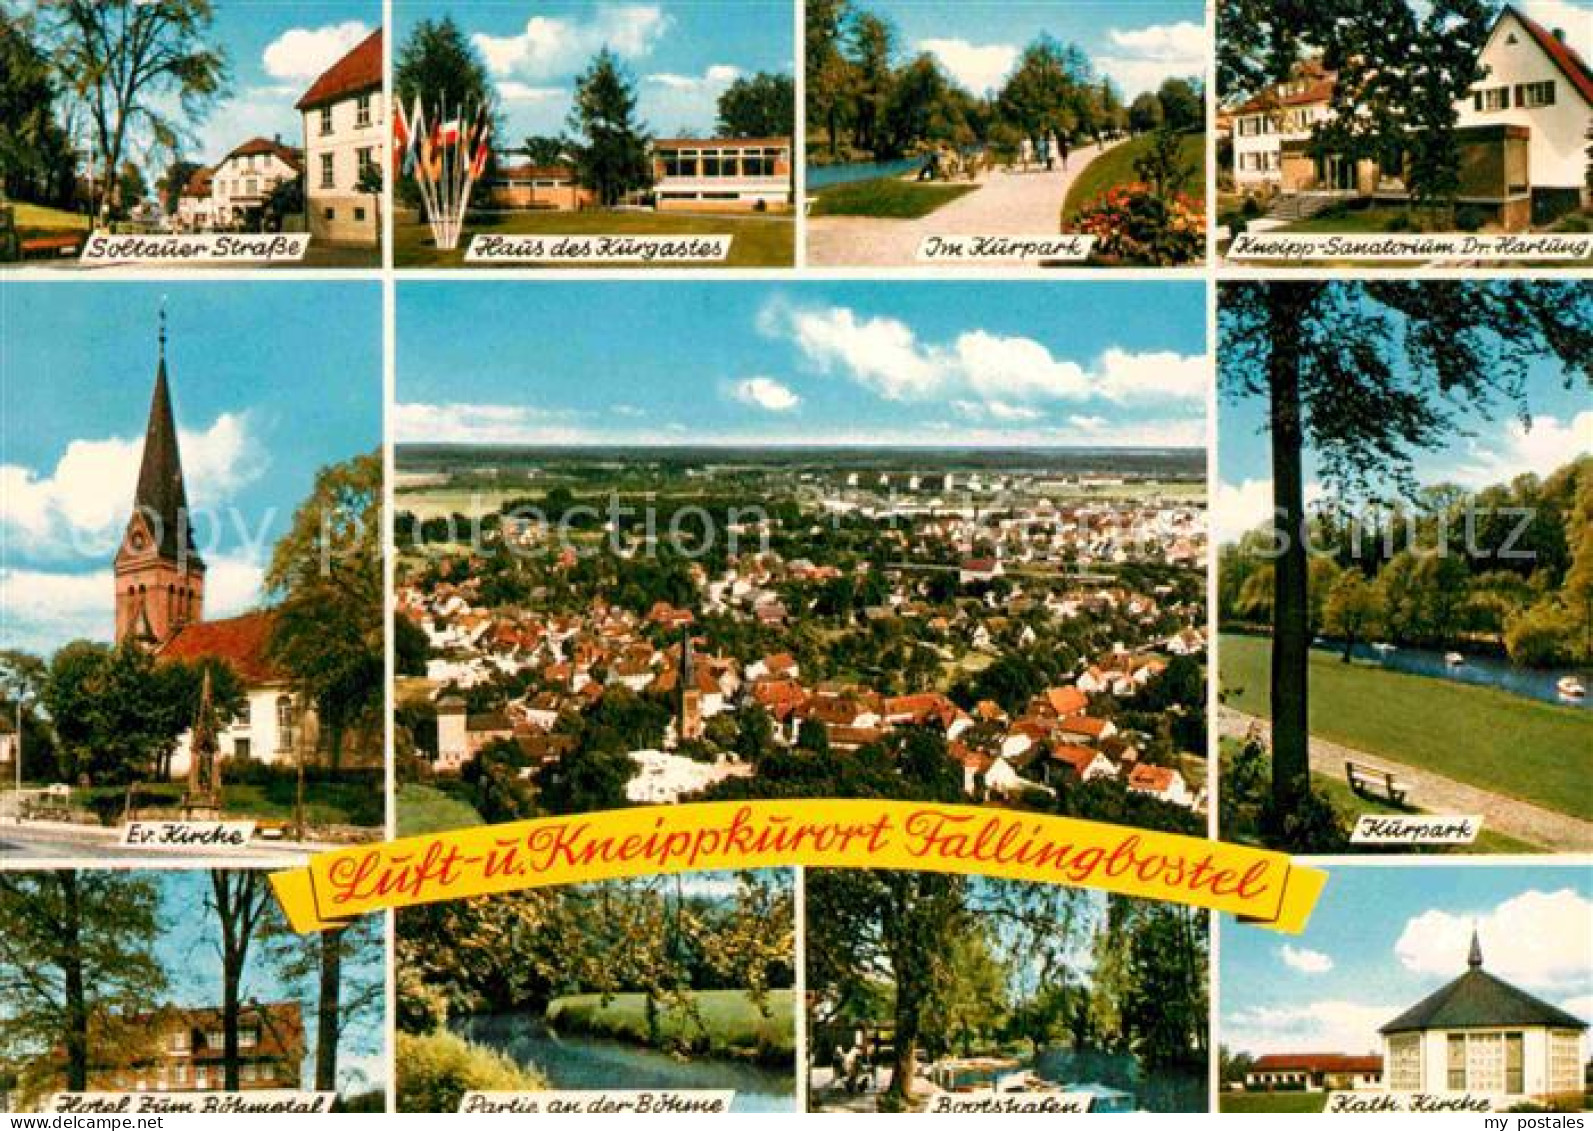 72801012 Fallingbostel Soltauer Strasse Kurhaus Kurpark Kneipp Sanatorium Kirche - Fallingbostel